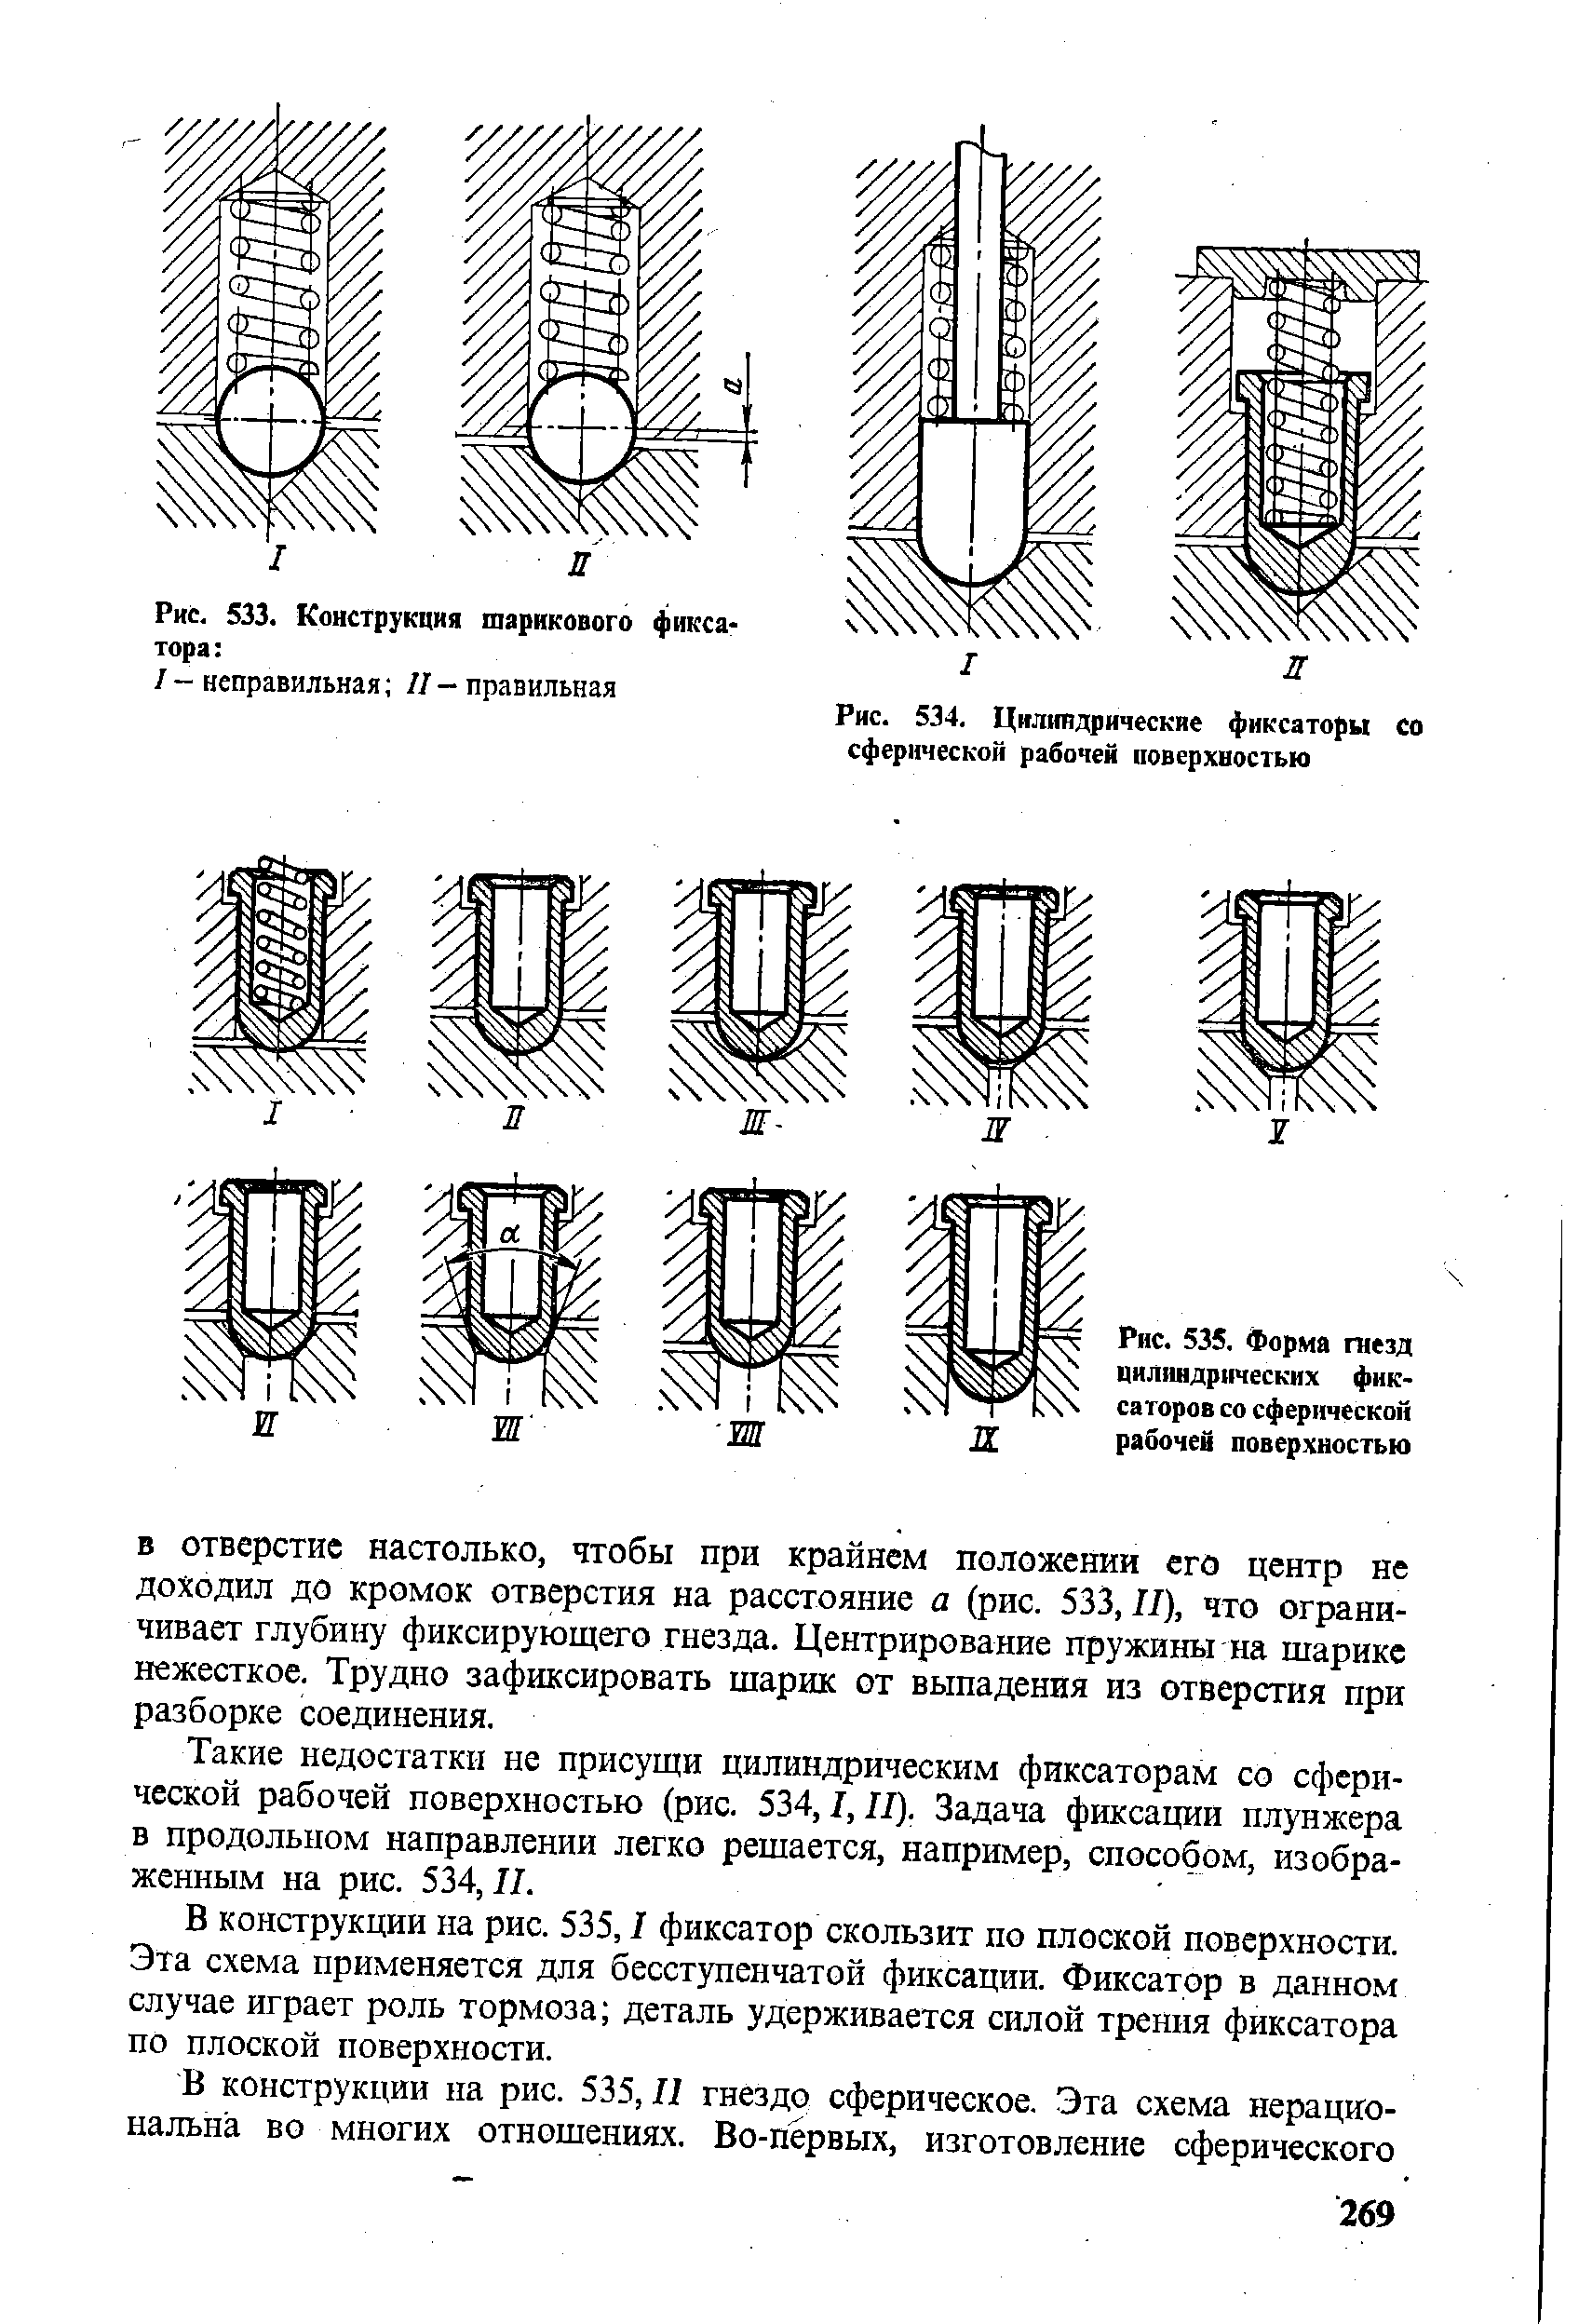 Рис. 535. Форма гнезд цилиндрических фиксаторов со сферической рабочей поверхностью
